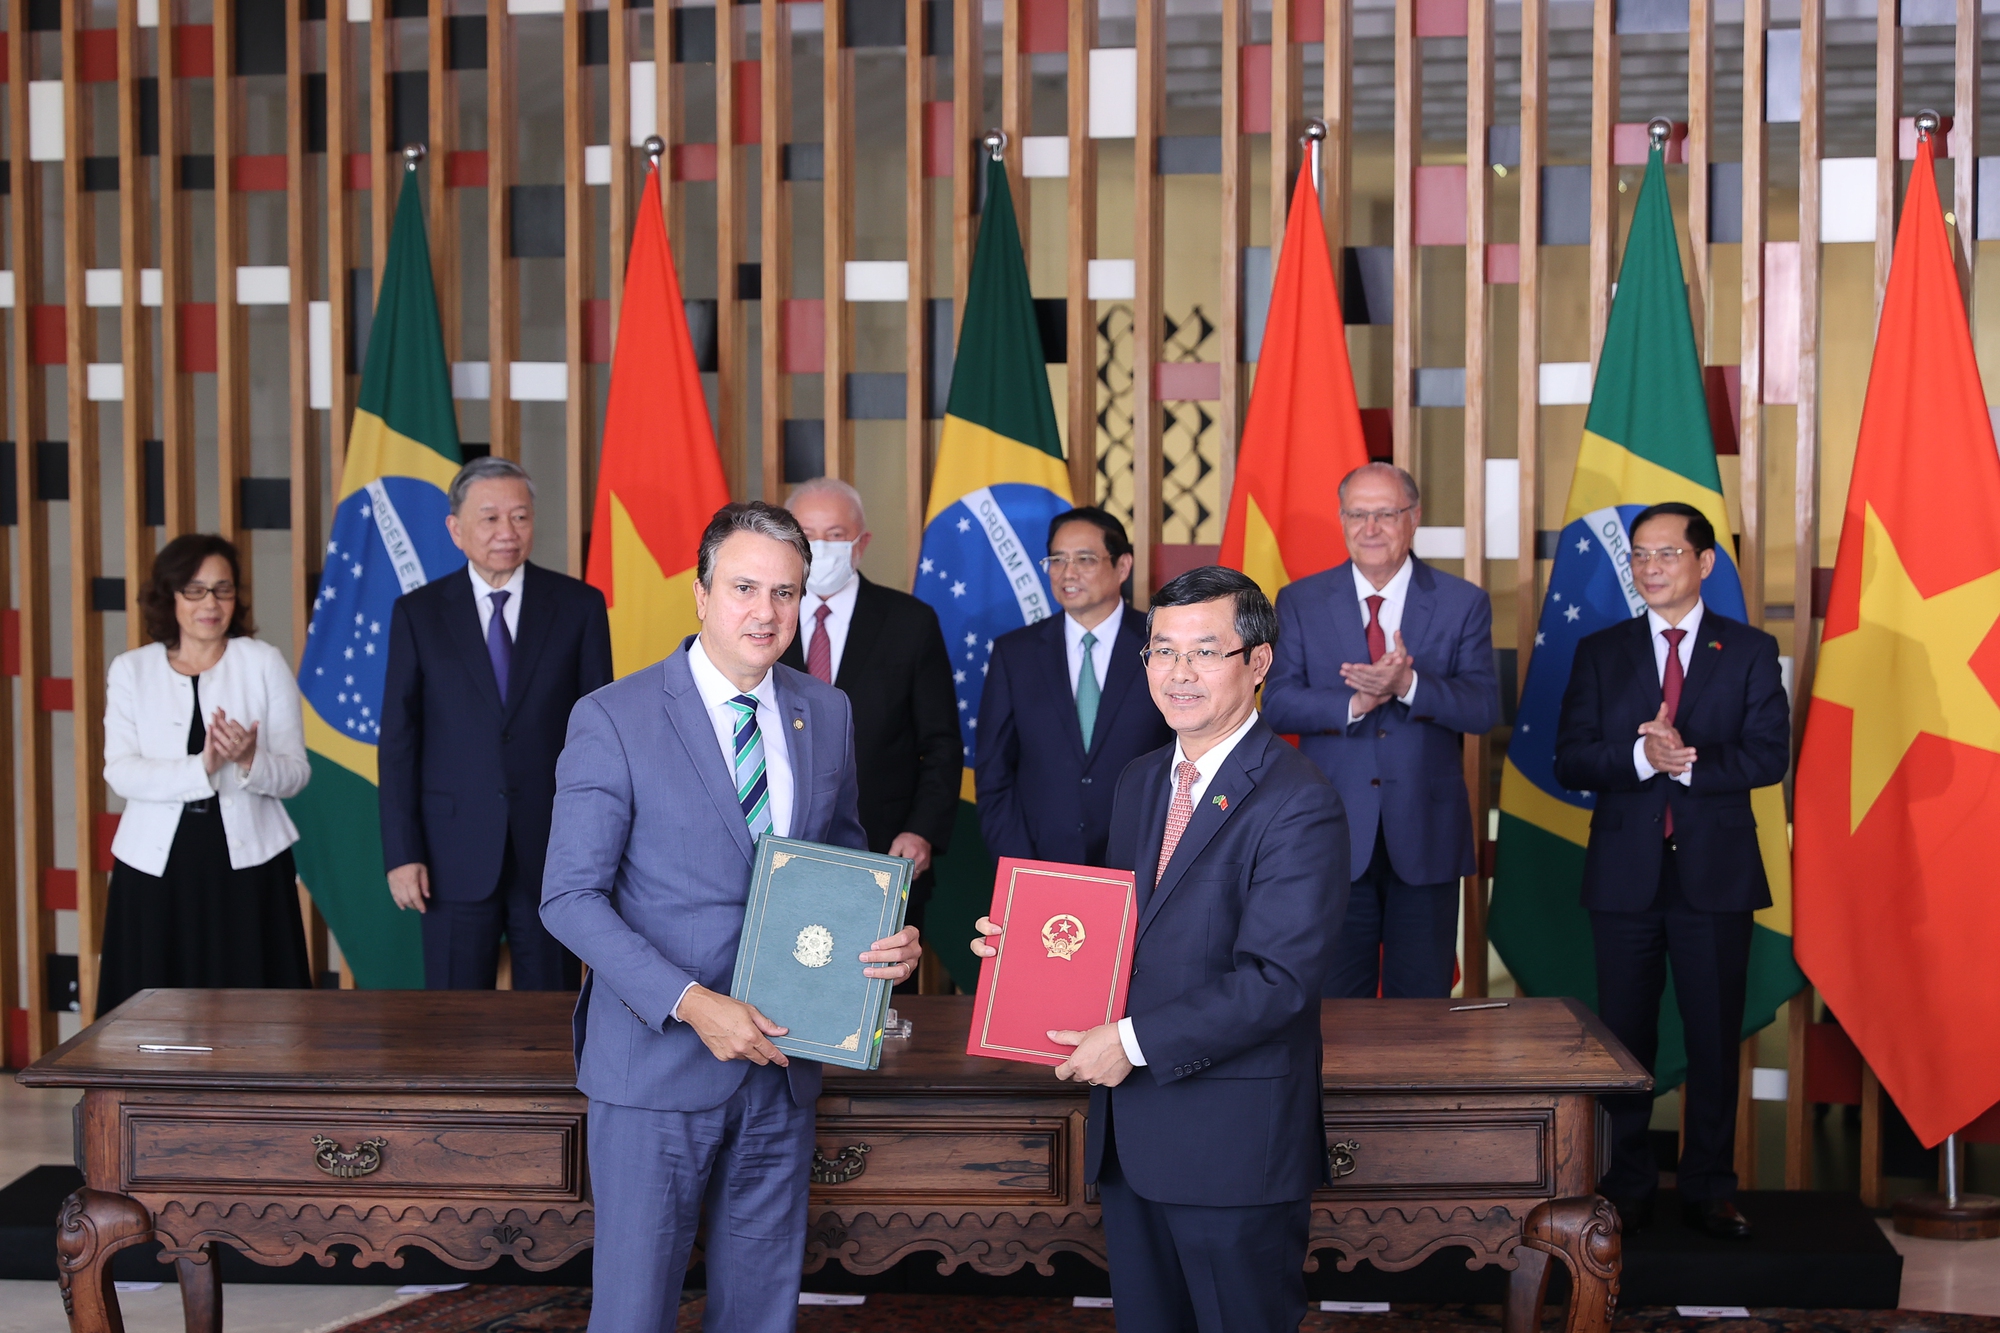 Thủ tướng Phạm Minh Chính và Tổng thống Brazil chứng kiến lễ ký văn bản hợp tác giữa hai nước trong các lĩnh vực giáo dục, quốc phòng, nông nghiệp, ngoại giao - Ảnh: VGP/Nhật Bắc